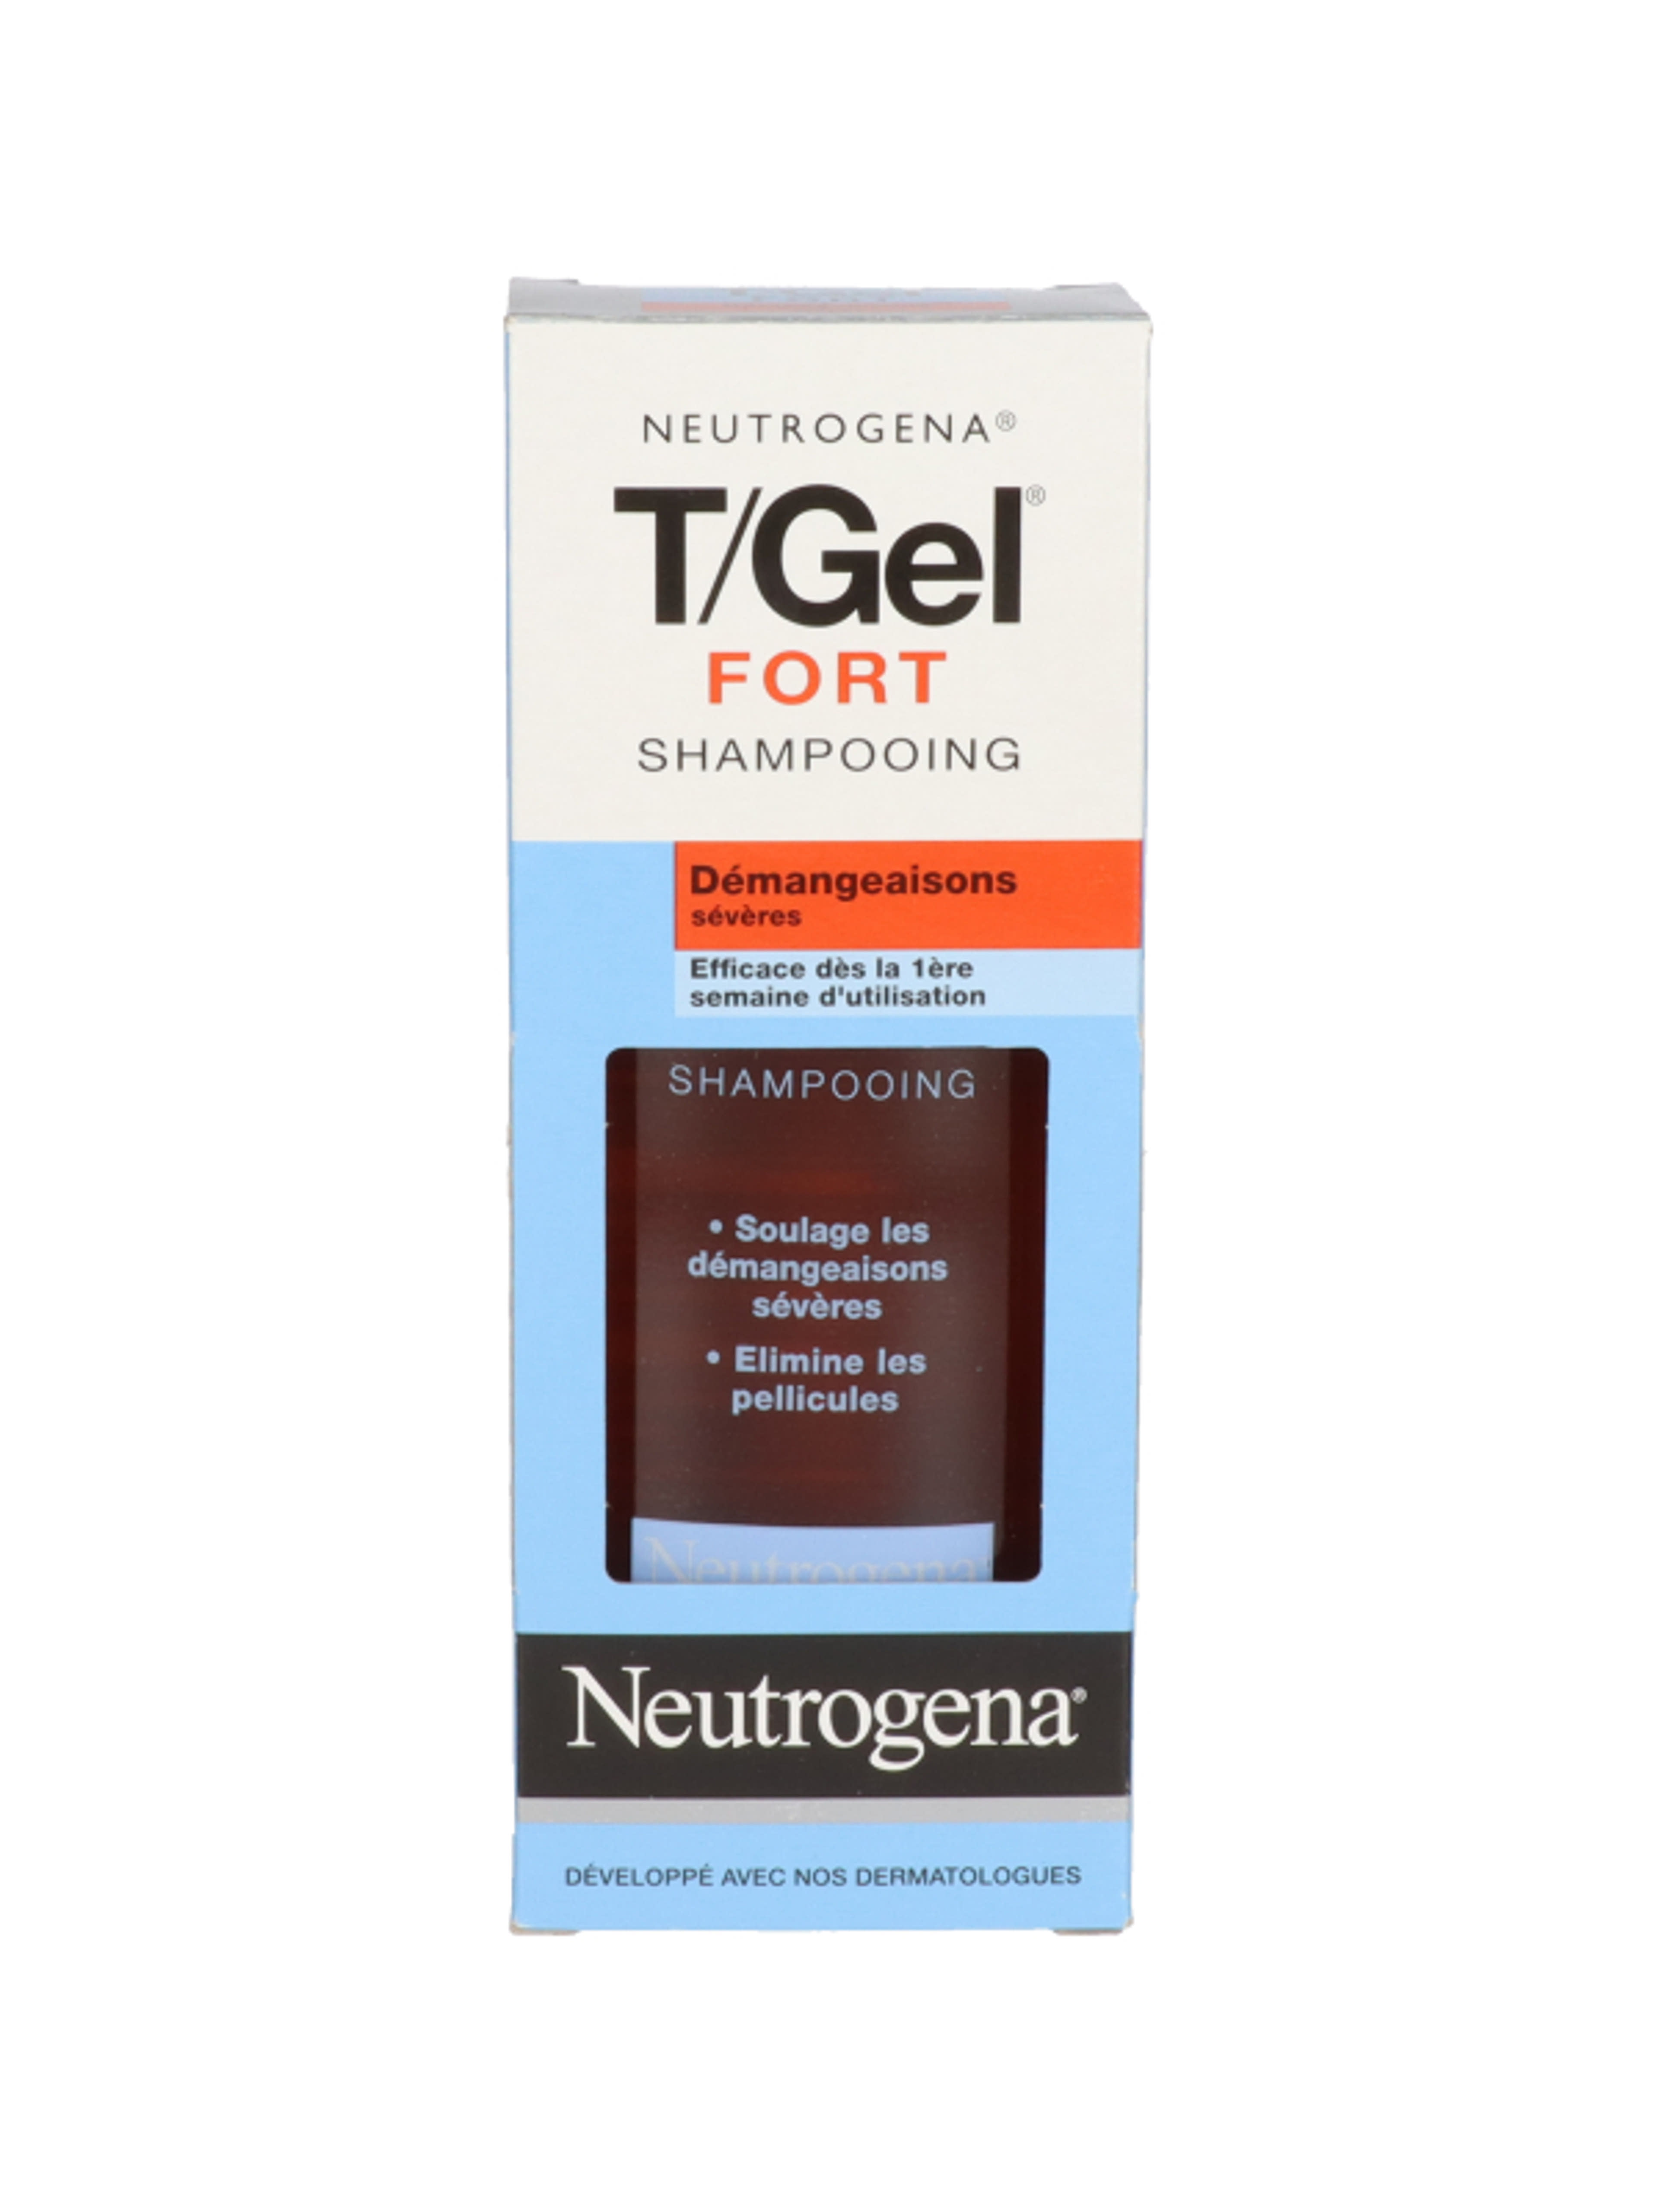 Neutrogena T/Gel Fort sampon erős viszketésre - 250 ml-6